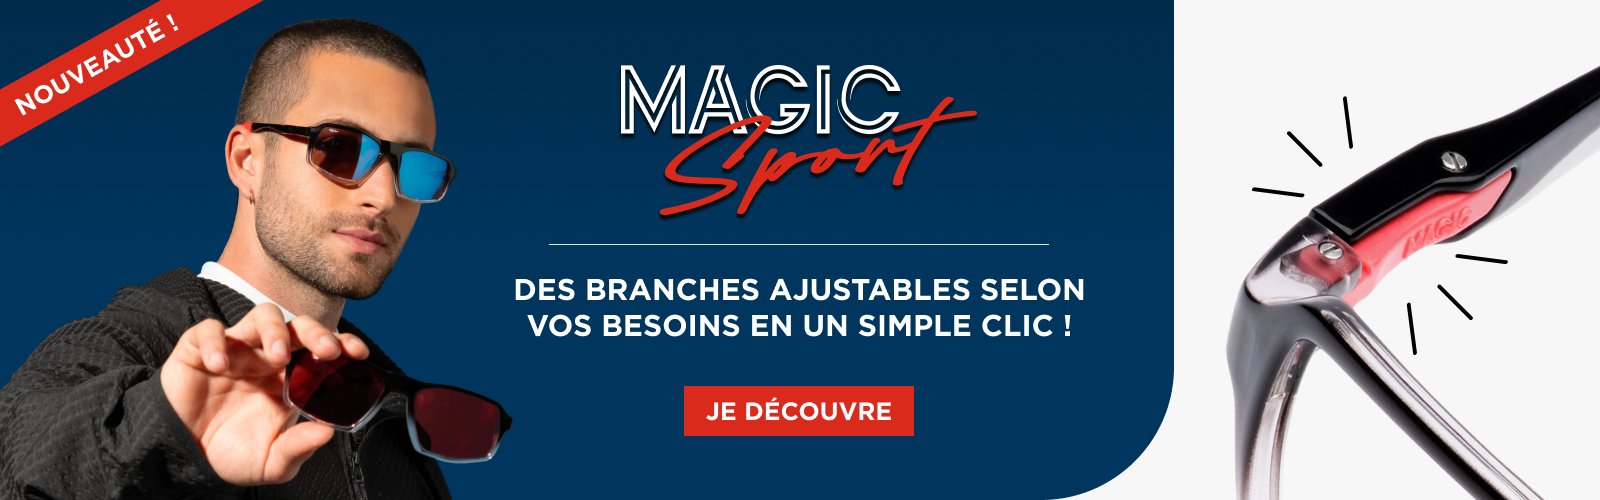 Magic Sport, des branches ajustables selon vos besoins en un simple clic !